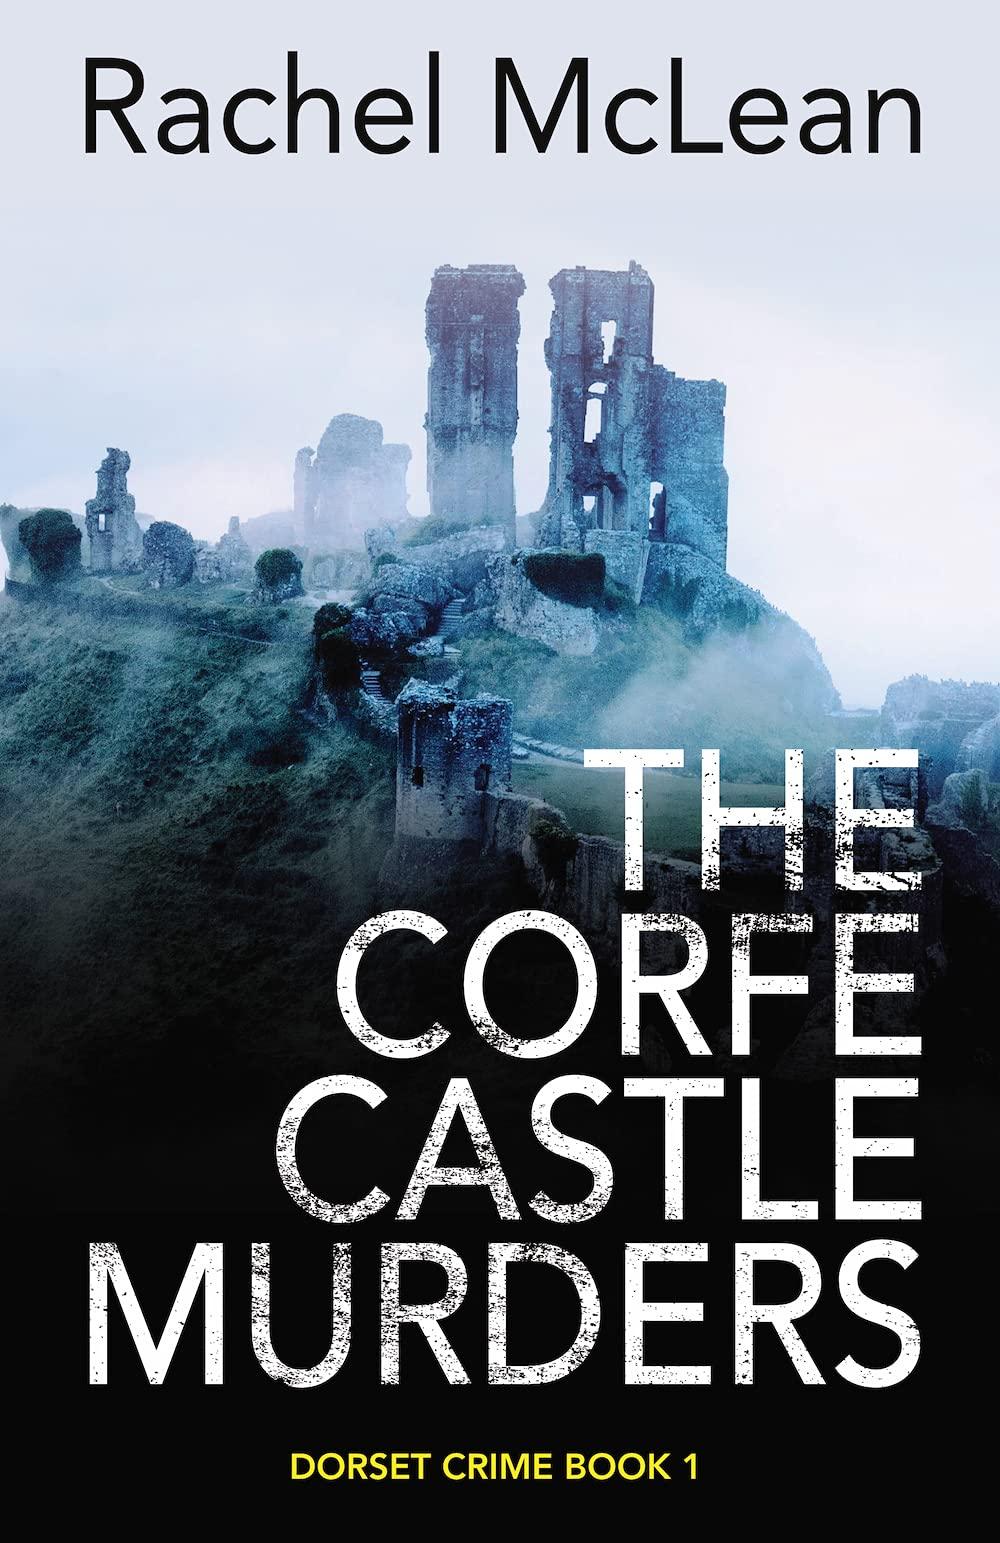 The Corfe Castle Murders